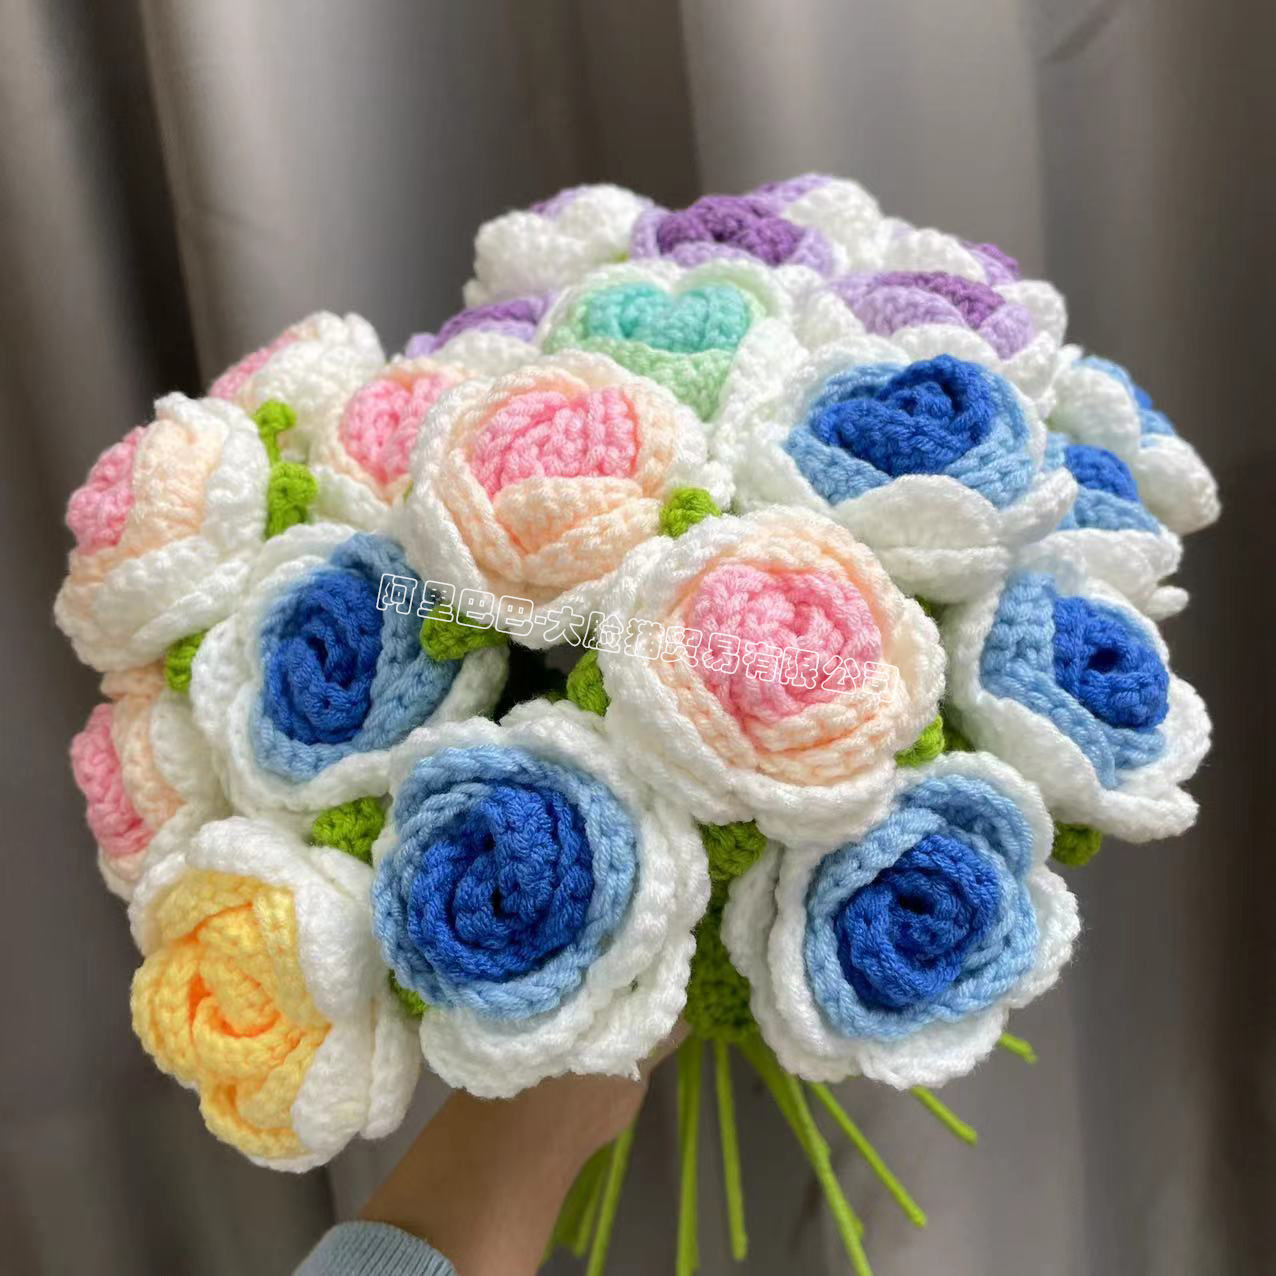 Finished Hand-Woven Rose Artificial Flower Woven Handmade Flowers Diy Wool Woven Homemade Crochet Bouquet